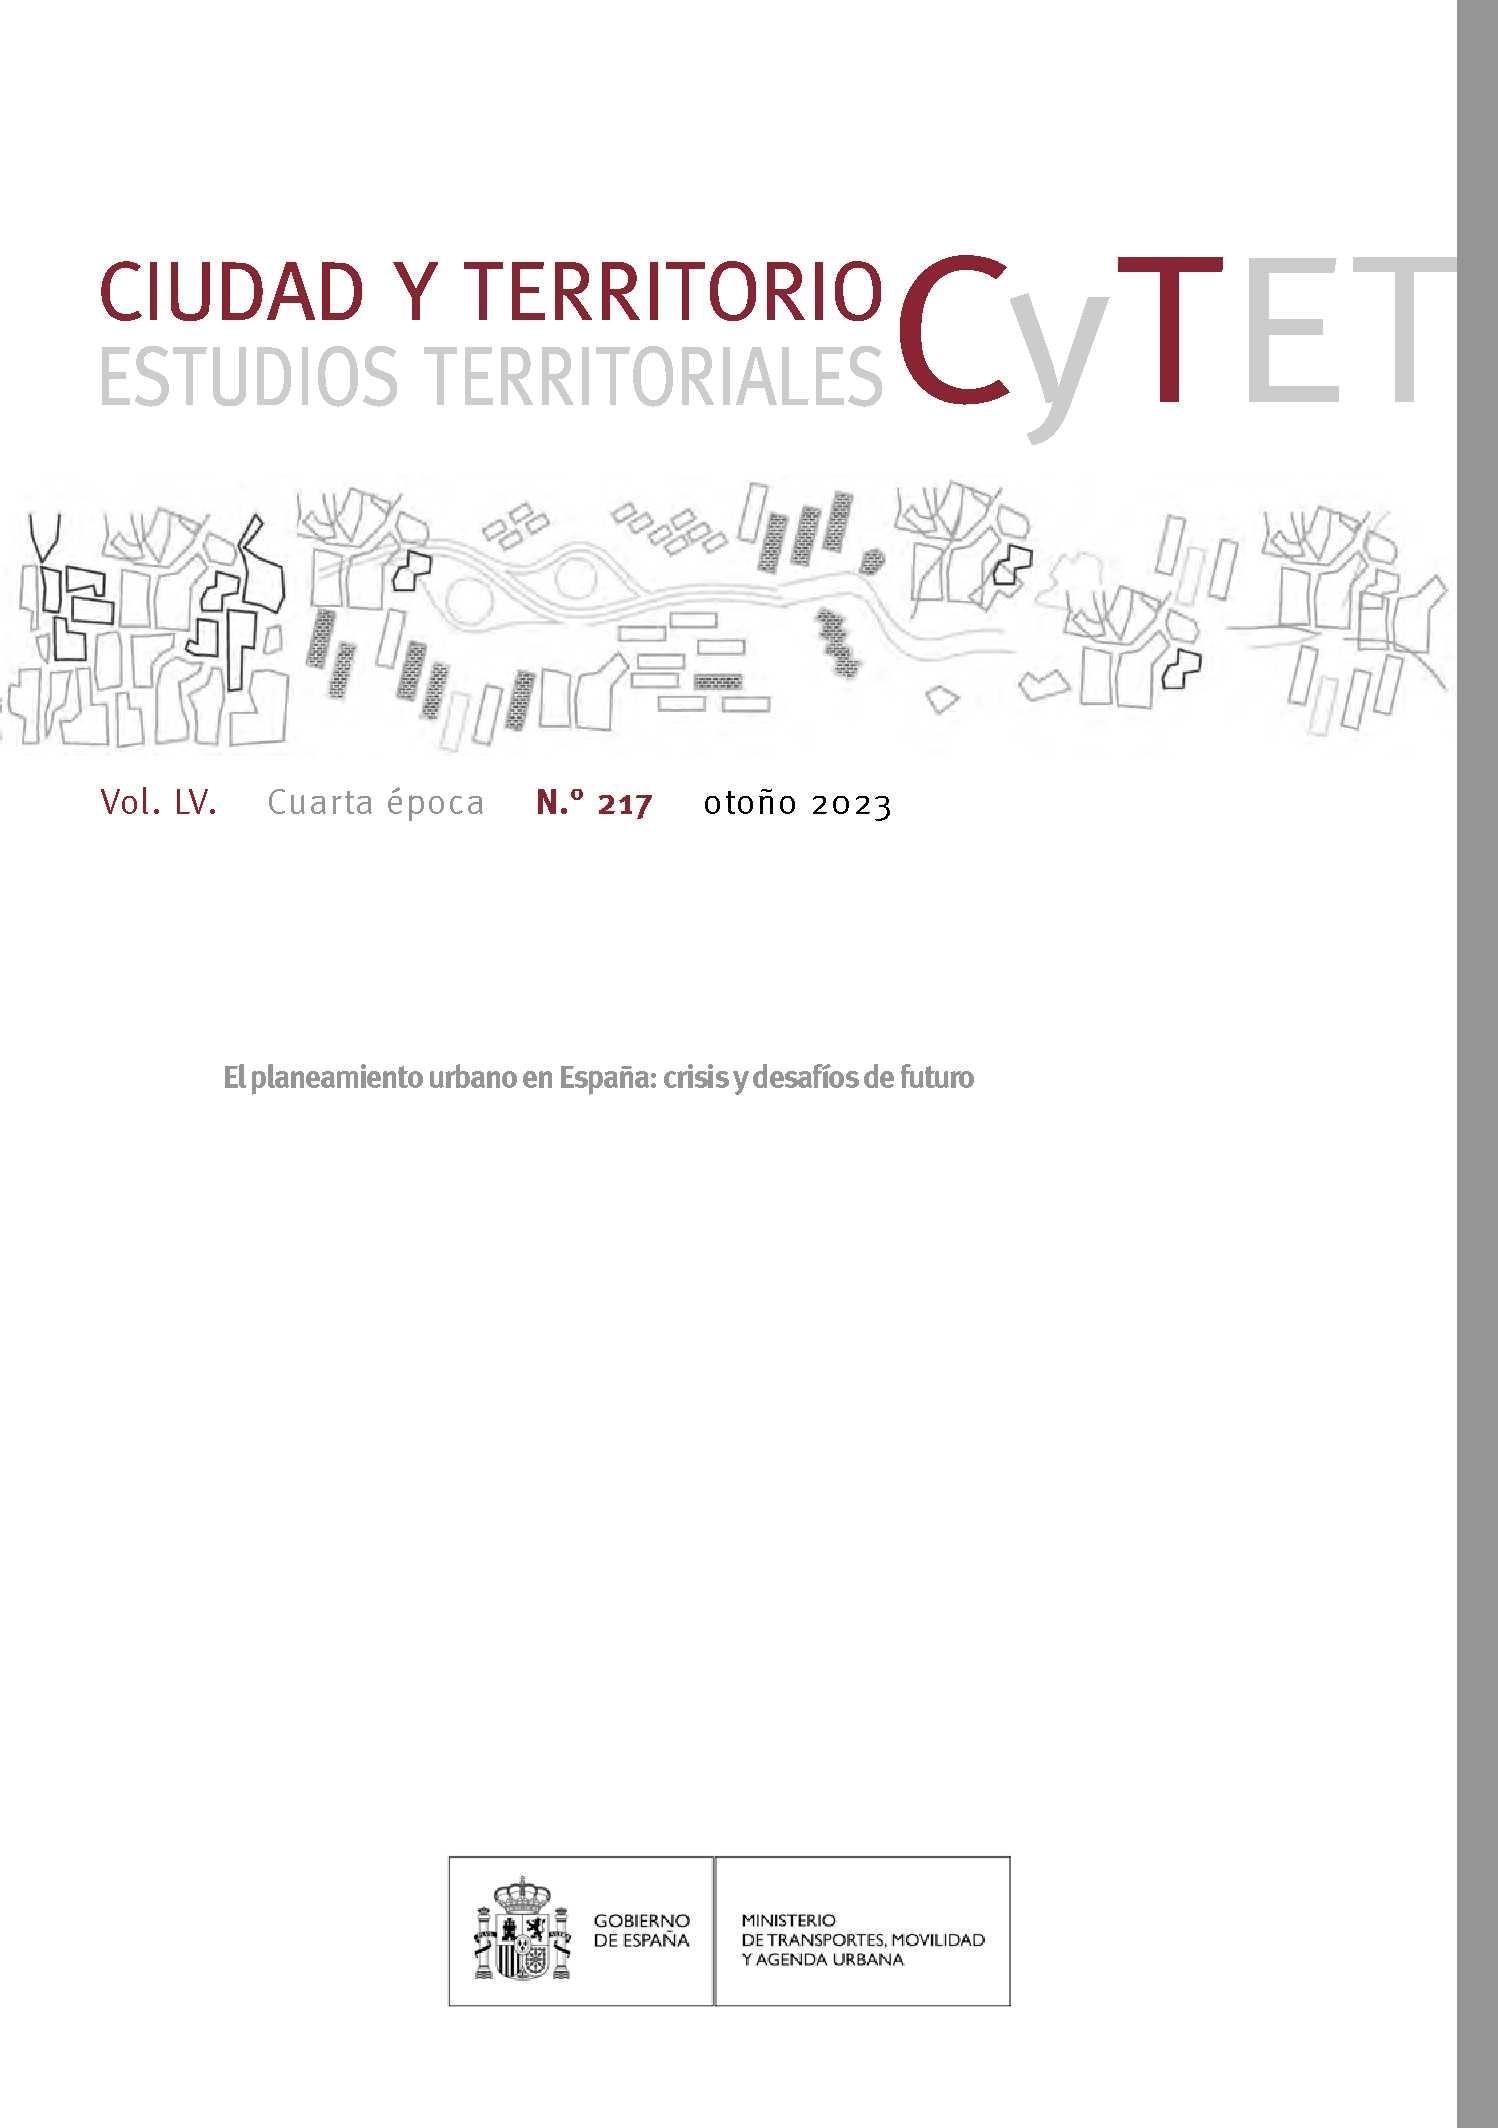 CYTET. CIUDAD Y TERRITORIO Nº 217 "EL PLANEAMIENTO URBANO EN ESPAÑA: CRISIS Y DESAFIOS DE FUTURO". 